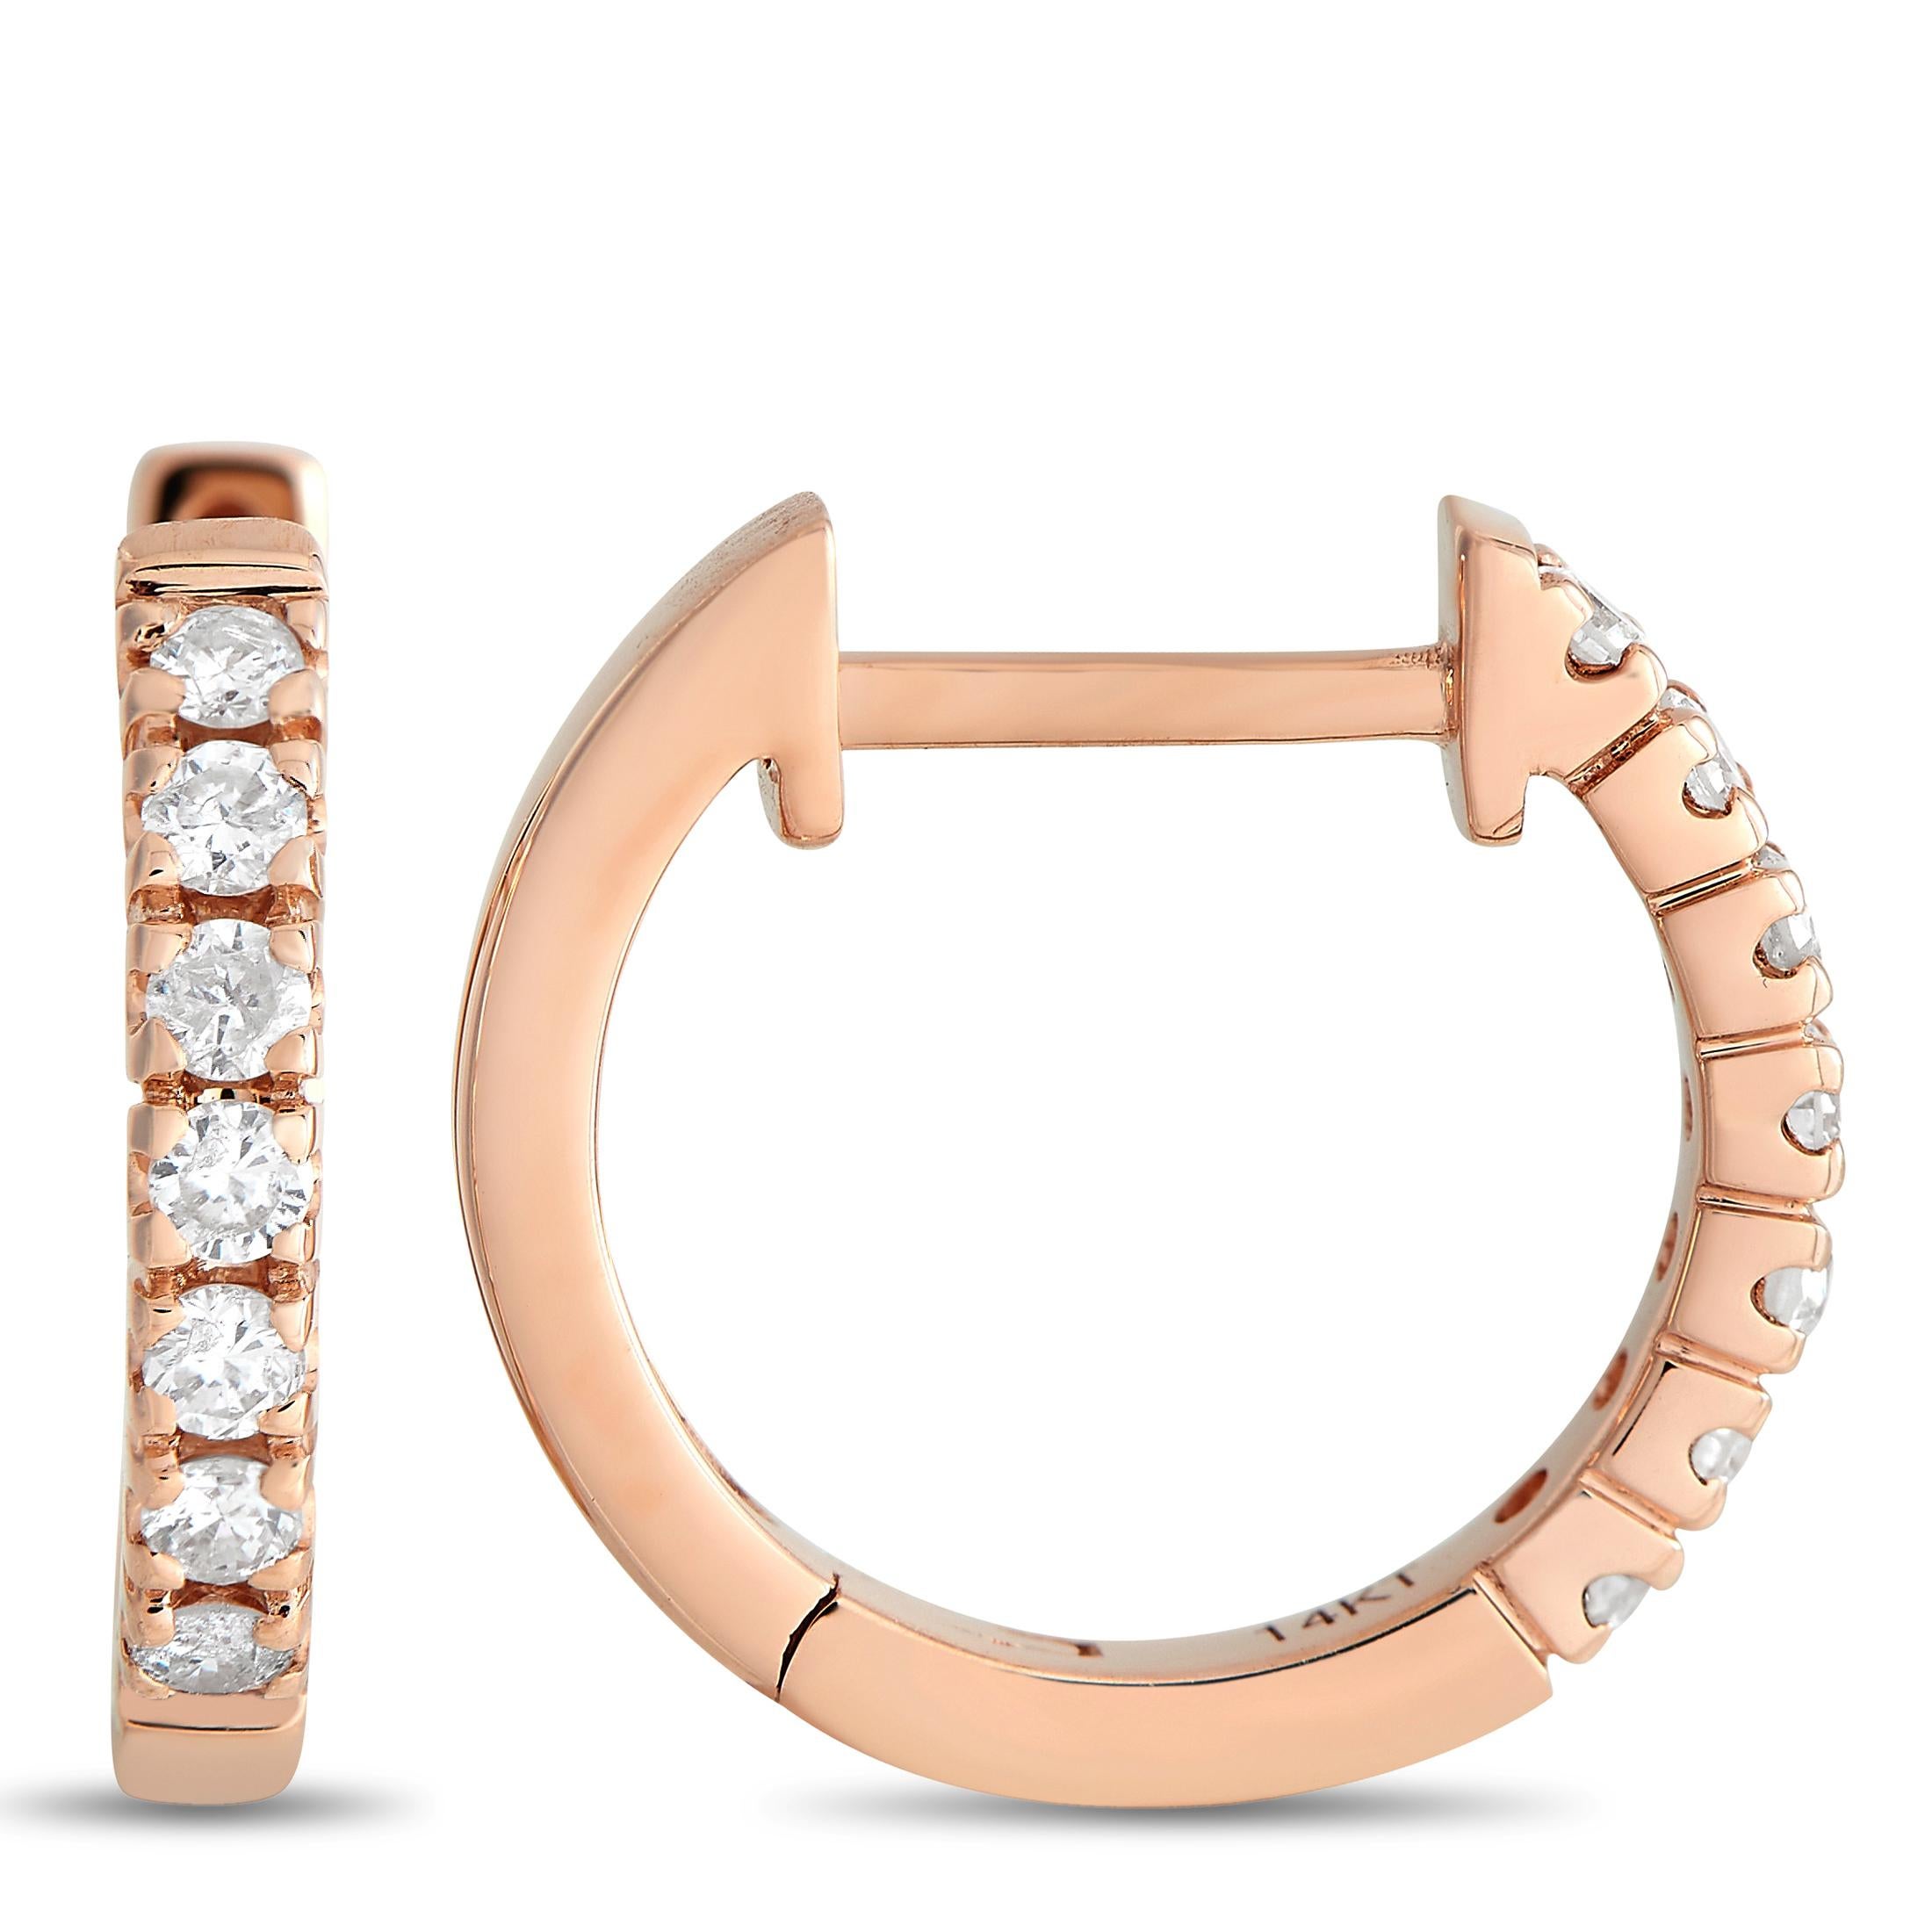 Eine minimalistische Fassung aus 14-karätigem Roségold setzt die funkelnden Diamanten von insgesamt 0,5 Karat an diesen eleganten Ohrringen wunderschön in Szene. Jedes Stück ist rund und unaufdringlich genug für jede Gelegenheit und misst 0,50